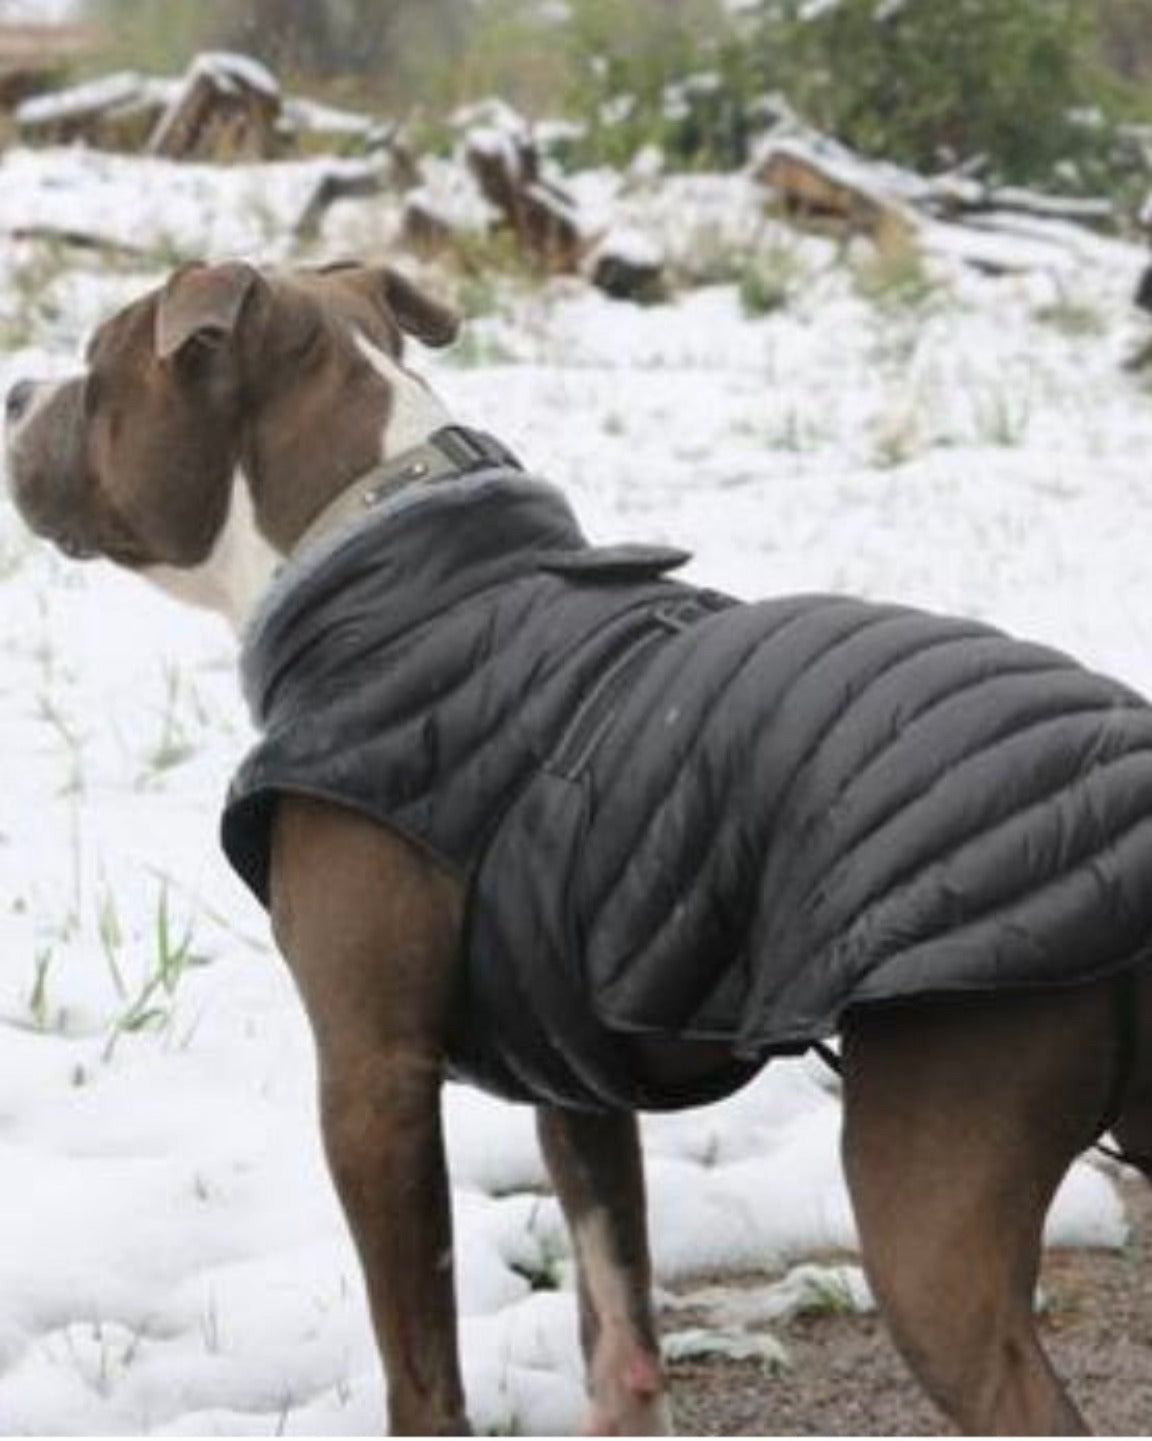 The extreme alpine coat